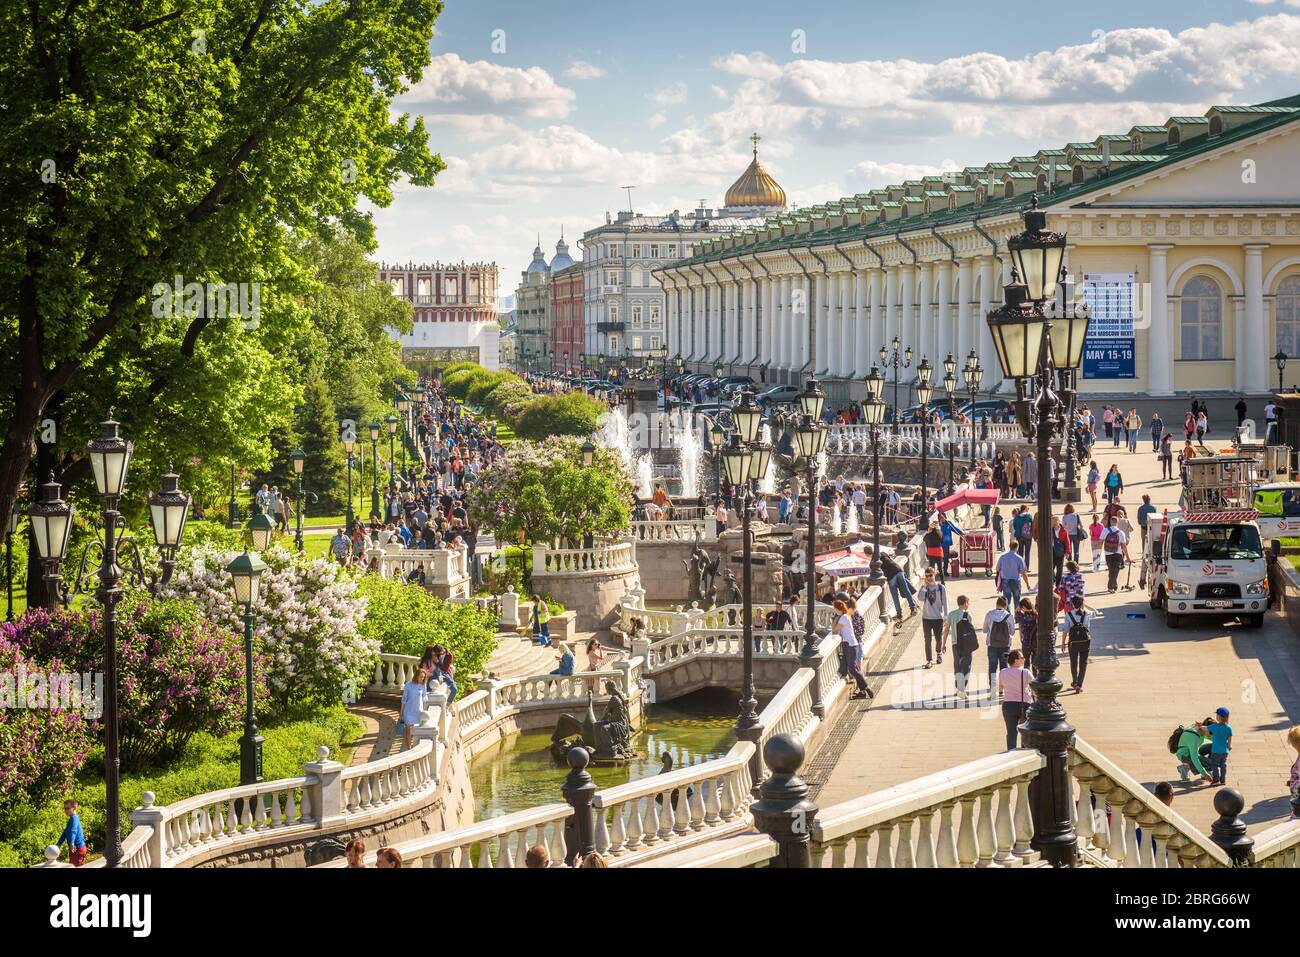 Moskau – 19. Mai 2019: Manezhnaja-Platz mit schönem Garten und Brunnen in Moskau, Russland. Dieses Hotel ist eine Touristenattraktion von Moskau. Personen w Stockfoto